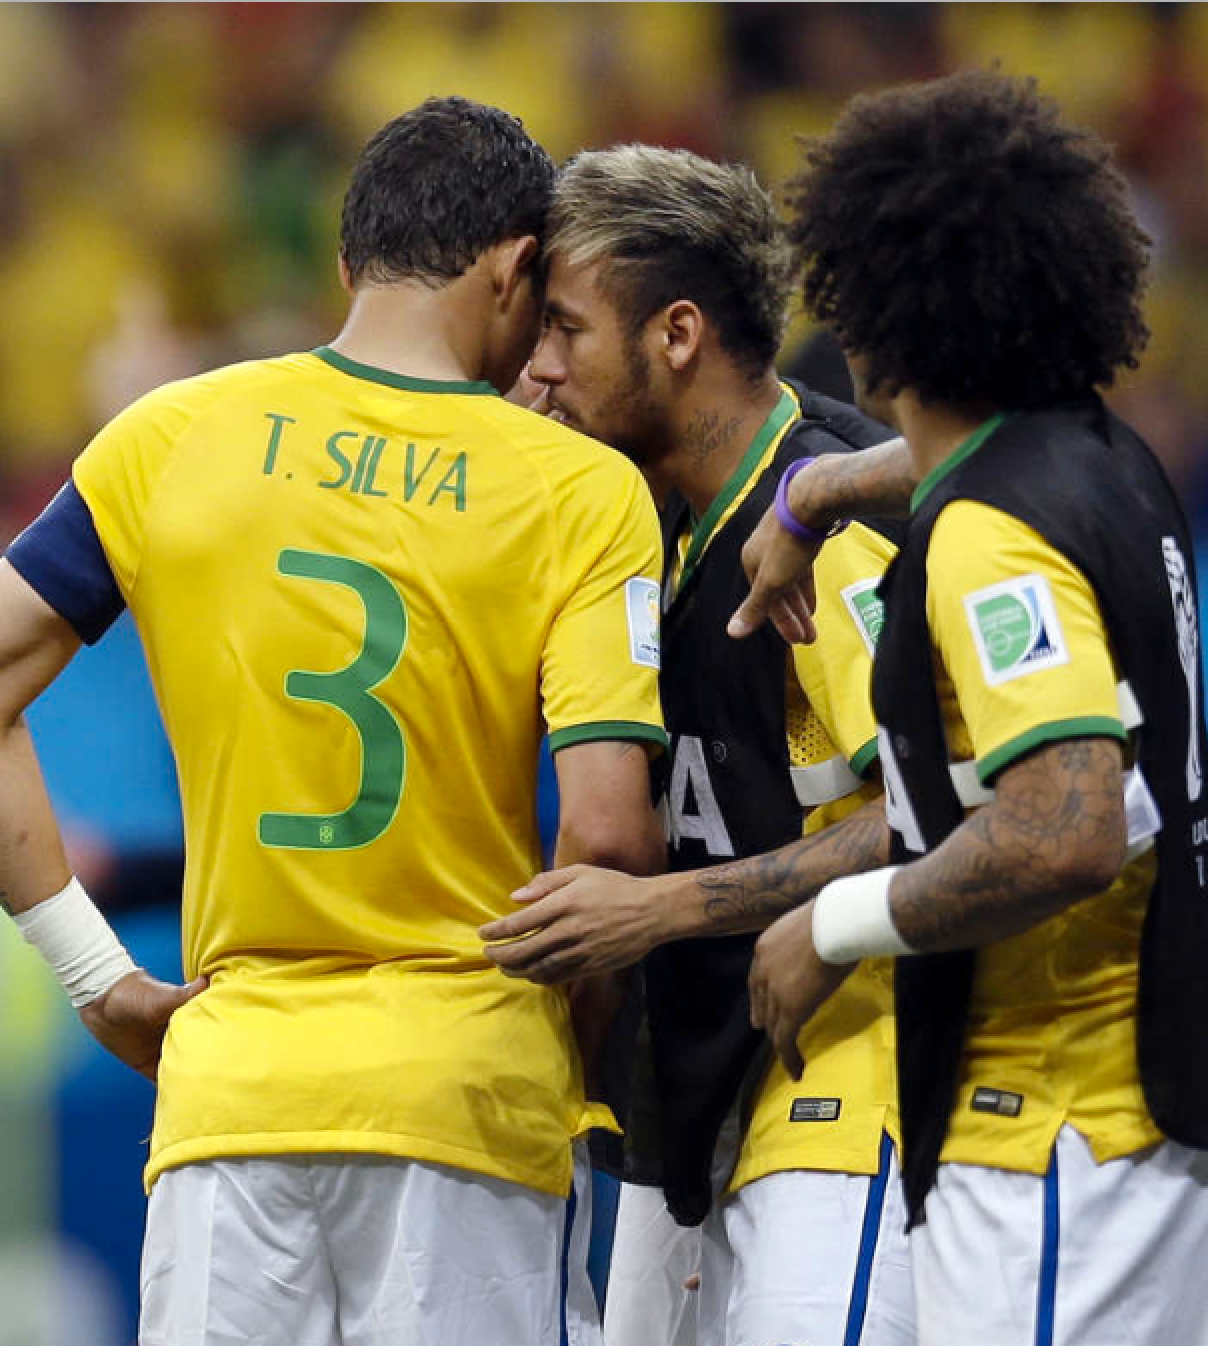 Thiago Silva och Neymar är lagkamrater i det brasilianska landslaget. Foto: AP/Natacha Pisarenko